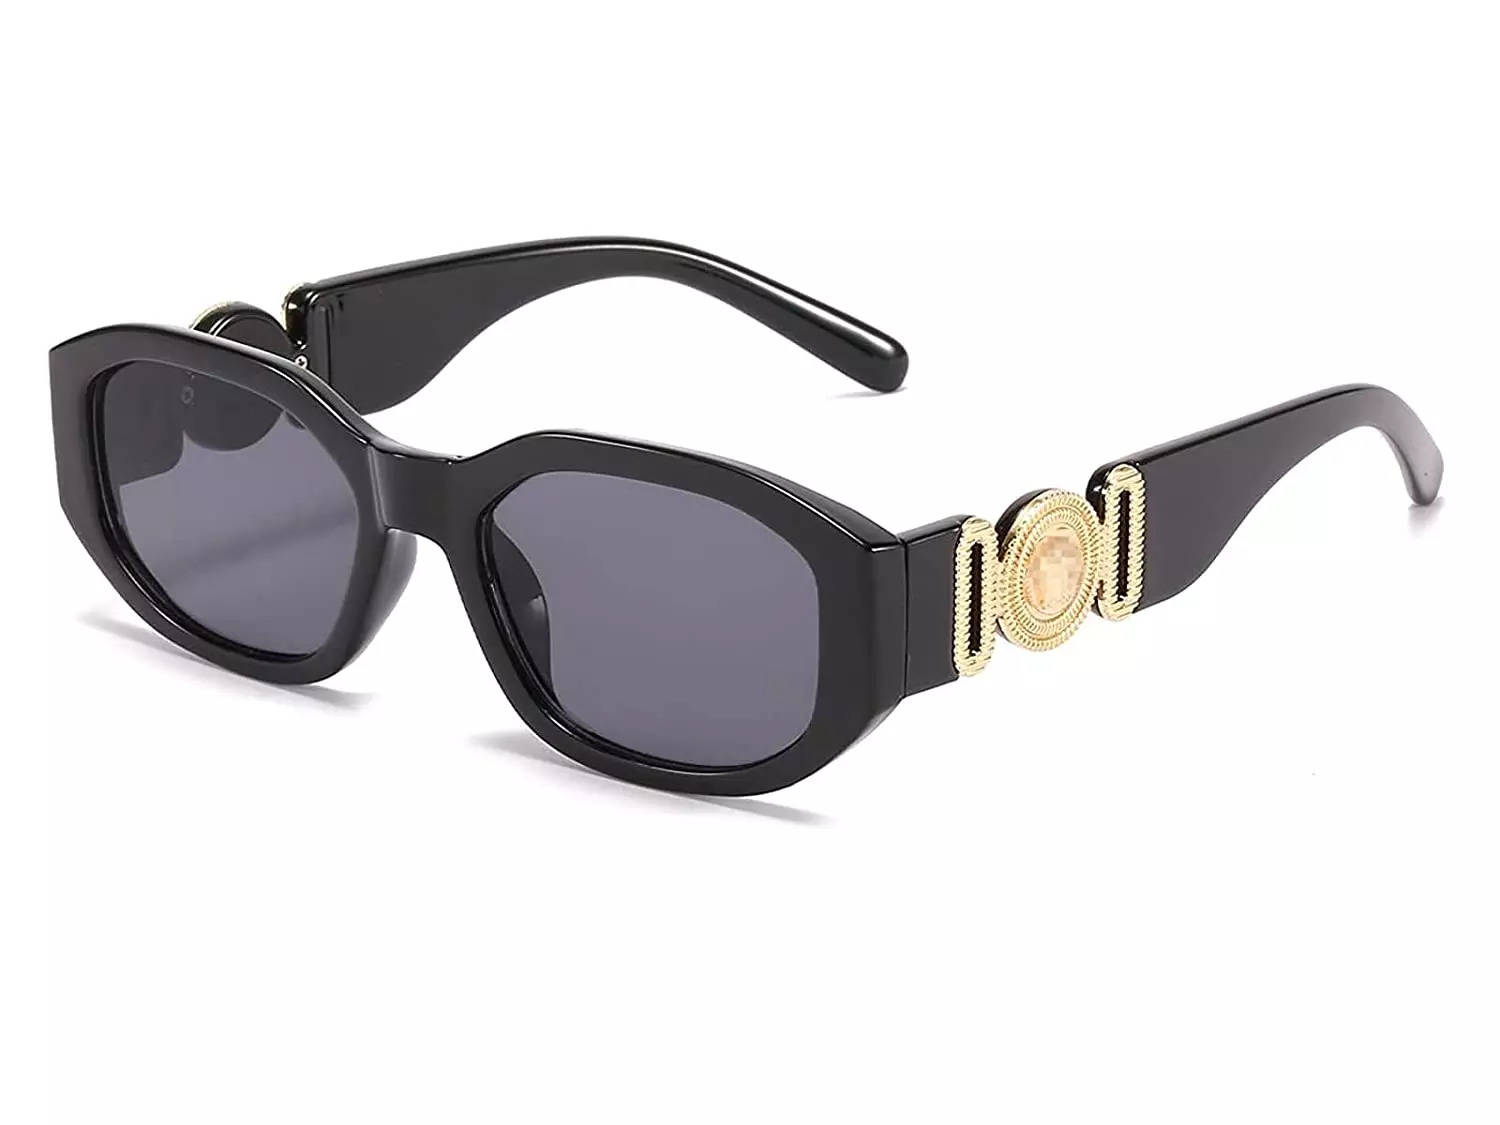 Rectangular Sunglasses for Men: 5 Best Stylish Rectangular Sunglasses ...